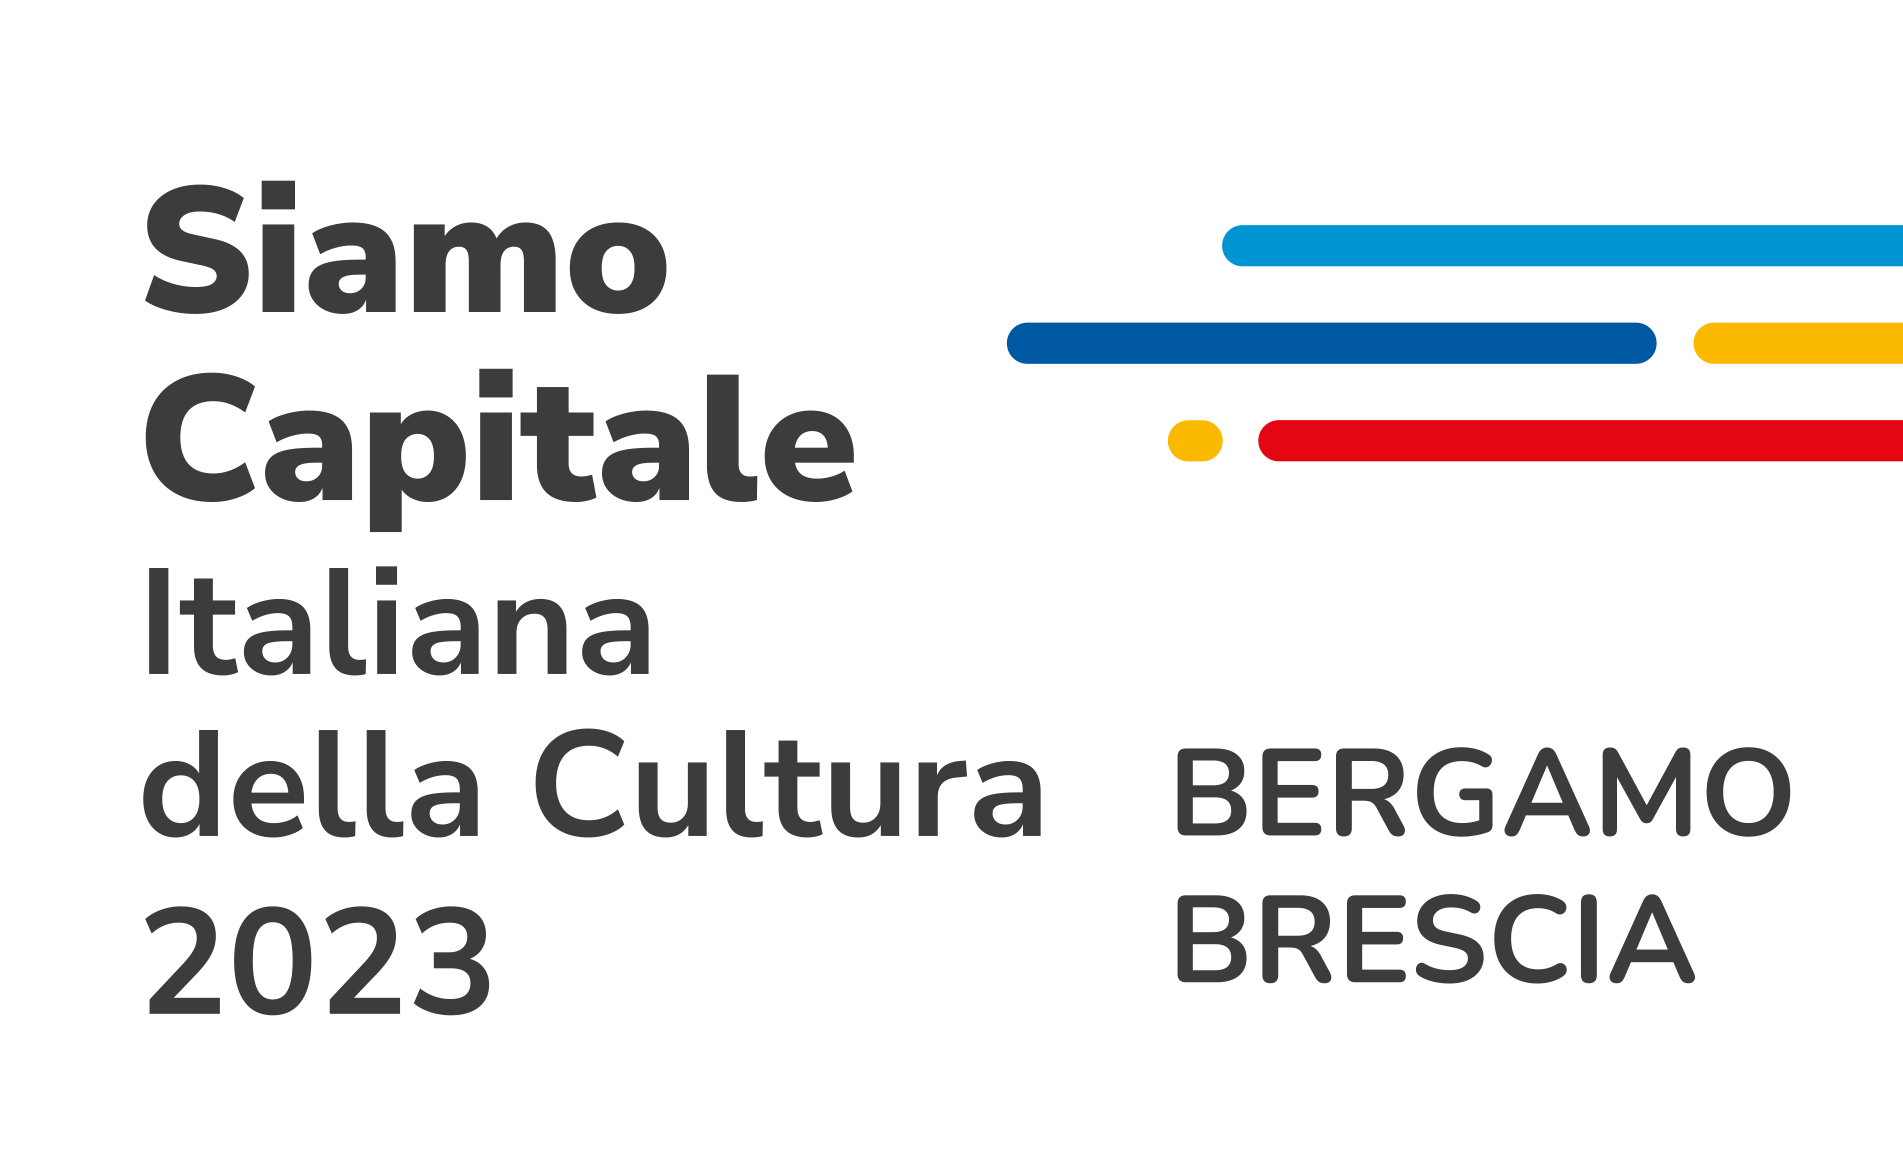 Brescia Bergamo 2023